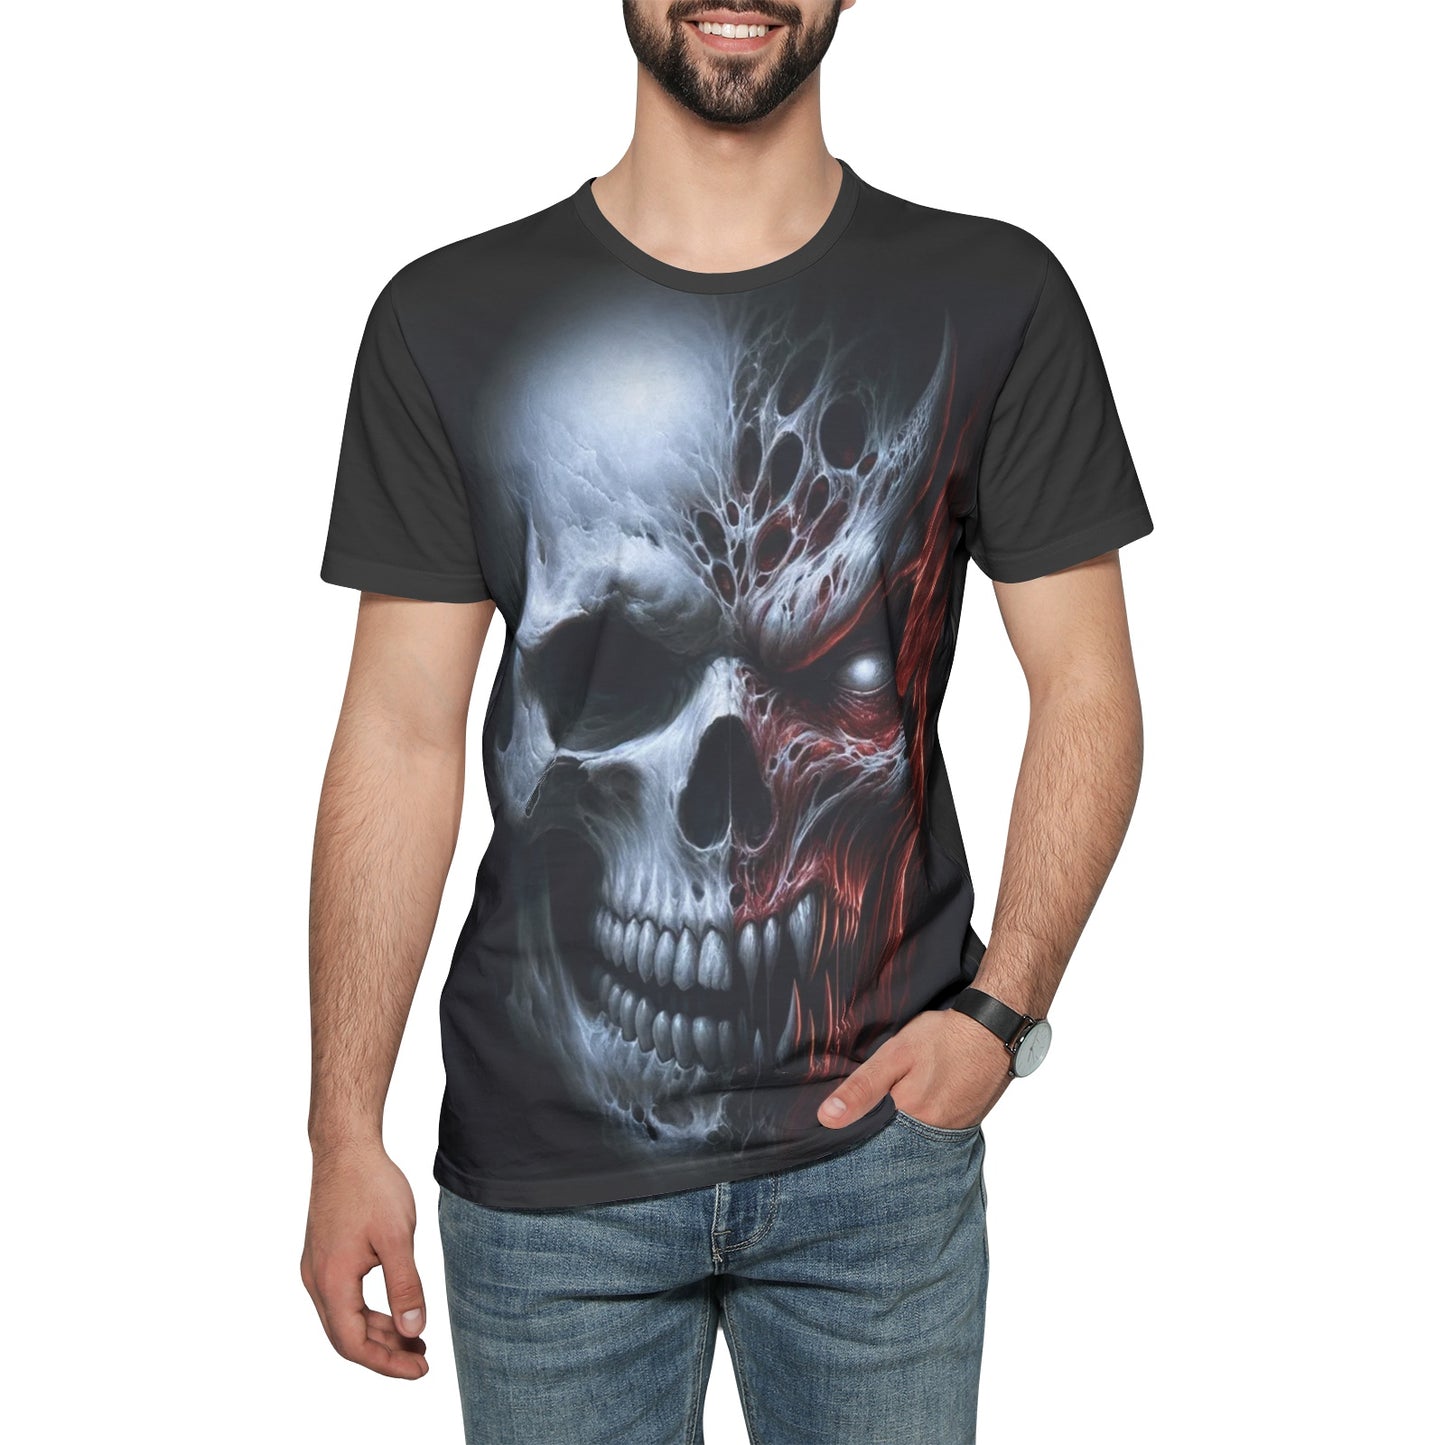 Deathmonic Skull & Demon Tee - Unisex Cotton T-Shirt